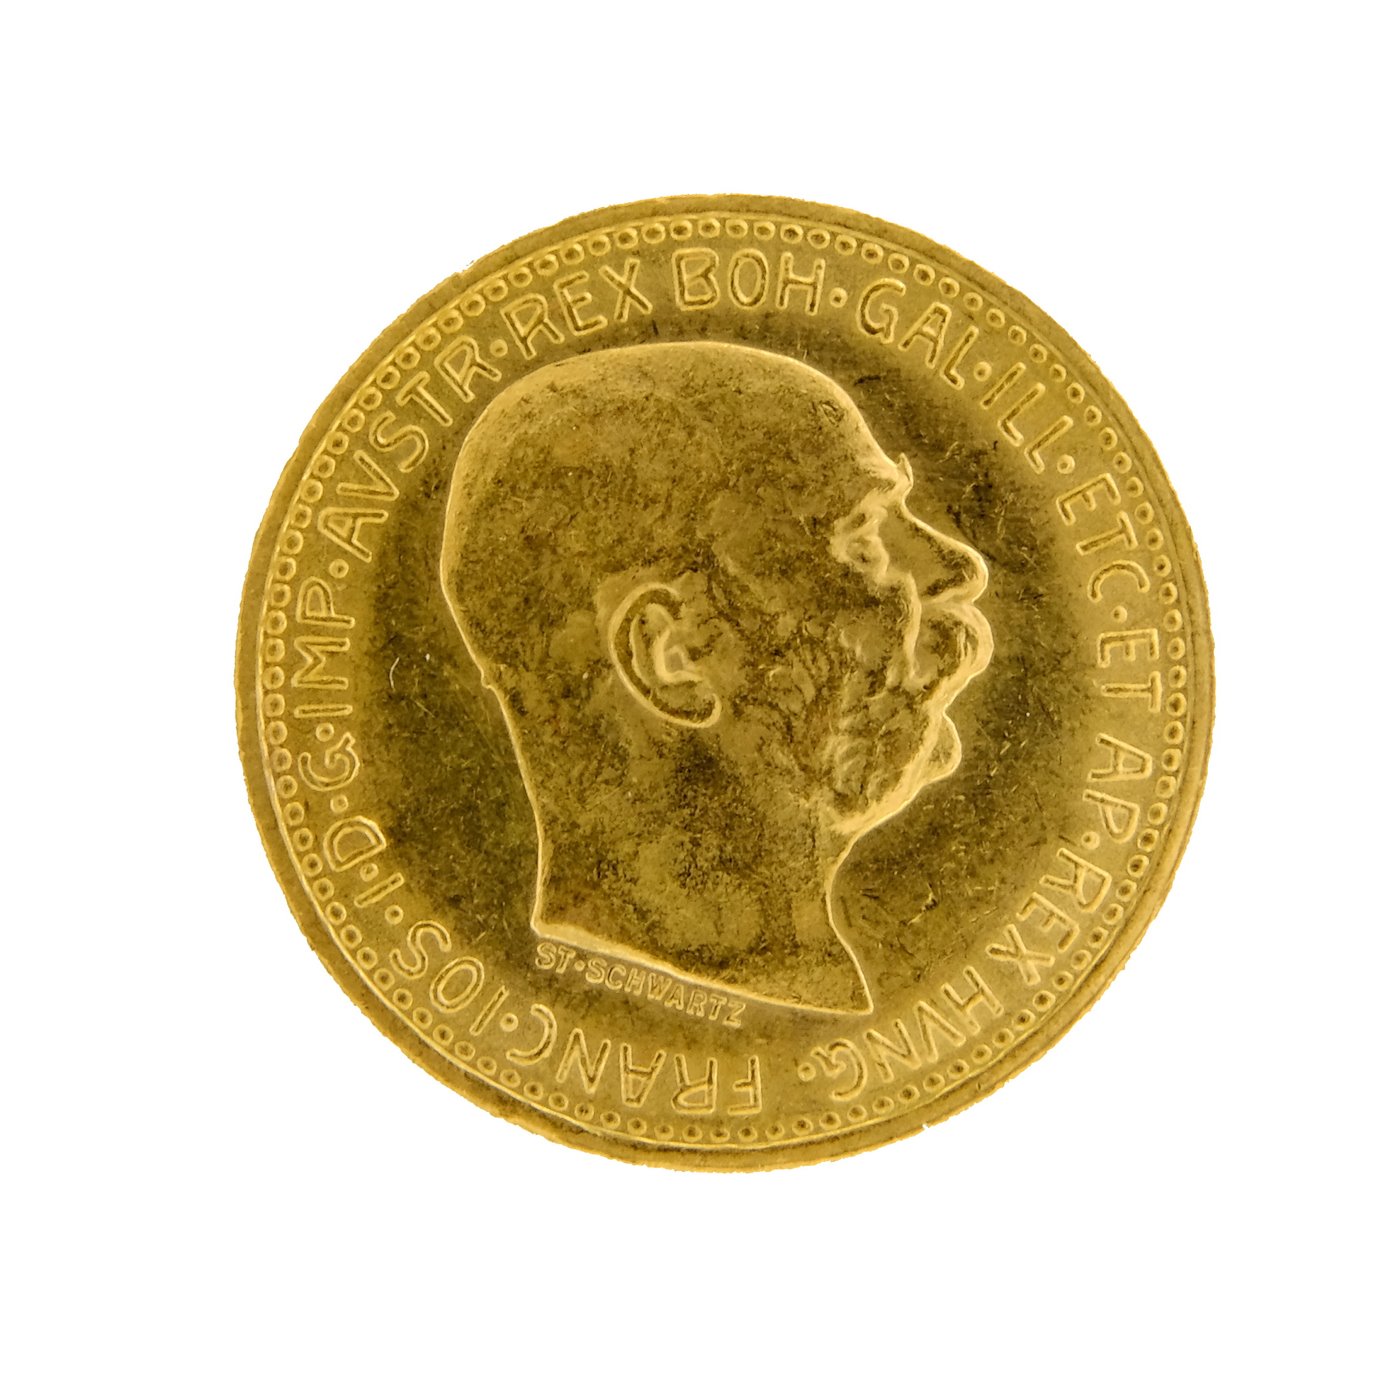 Mince - Rakousko Uhersko zlatá 10 Koruna 1911 rakouská. Zlato 900/1000, hrubá hmotnost mince 3,387g